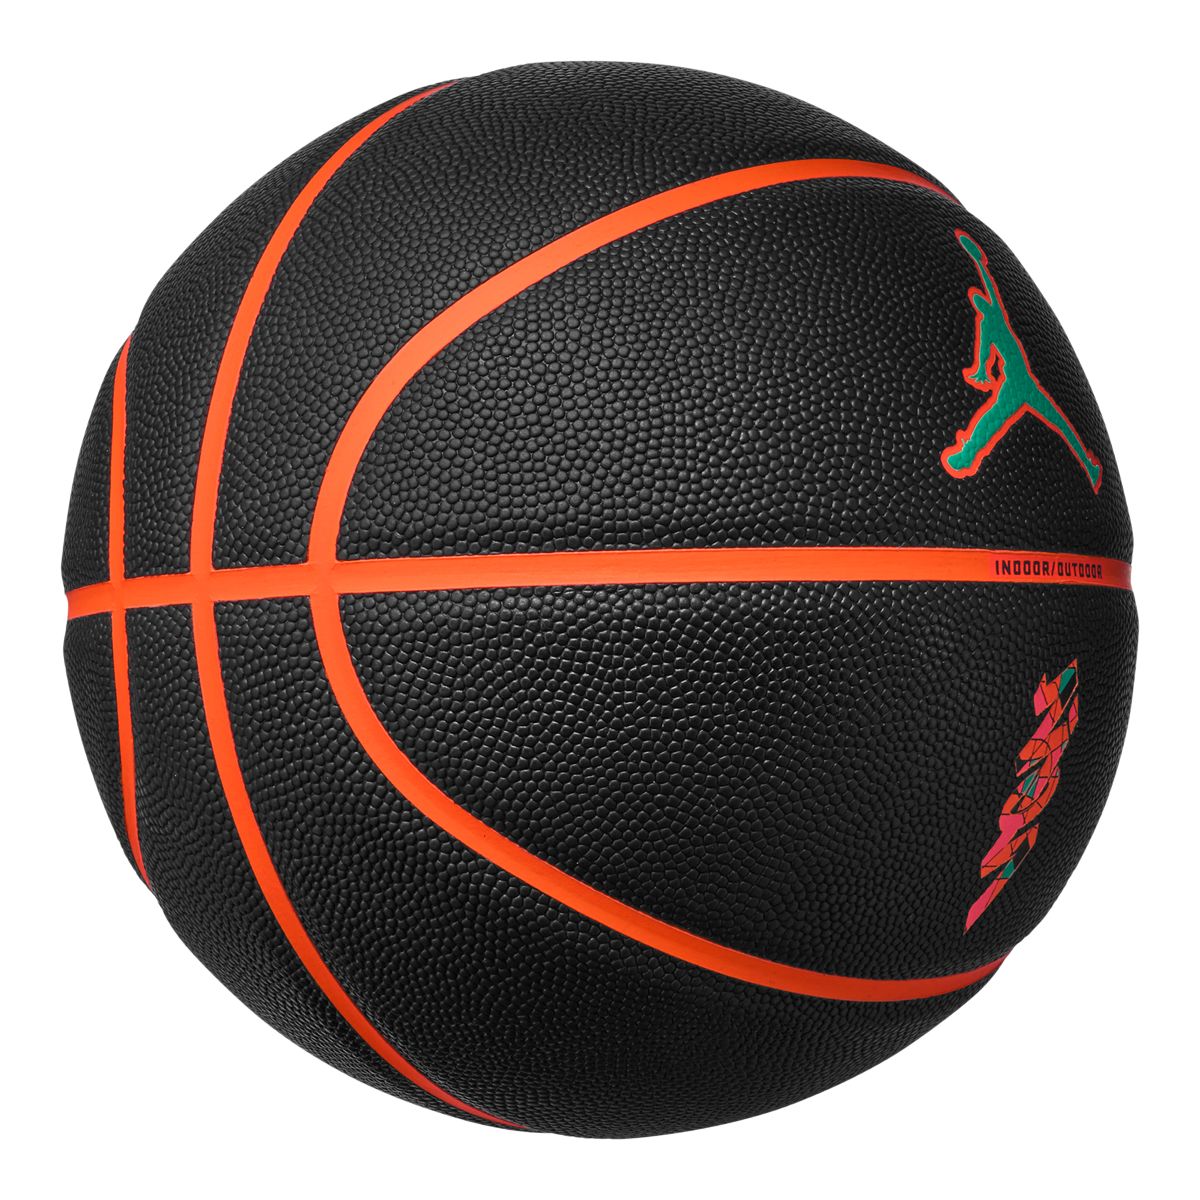 Jordan All Court Zion Basketball - Size 7